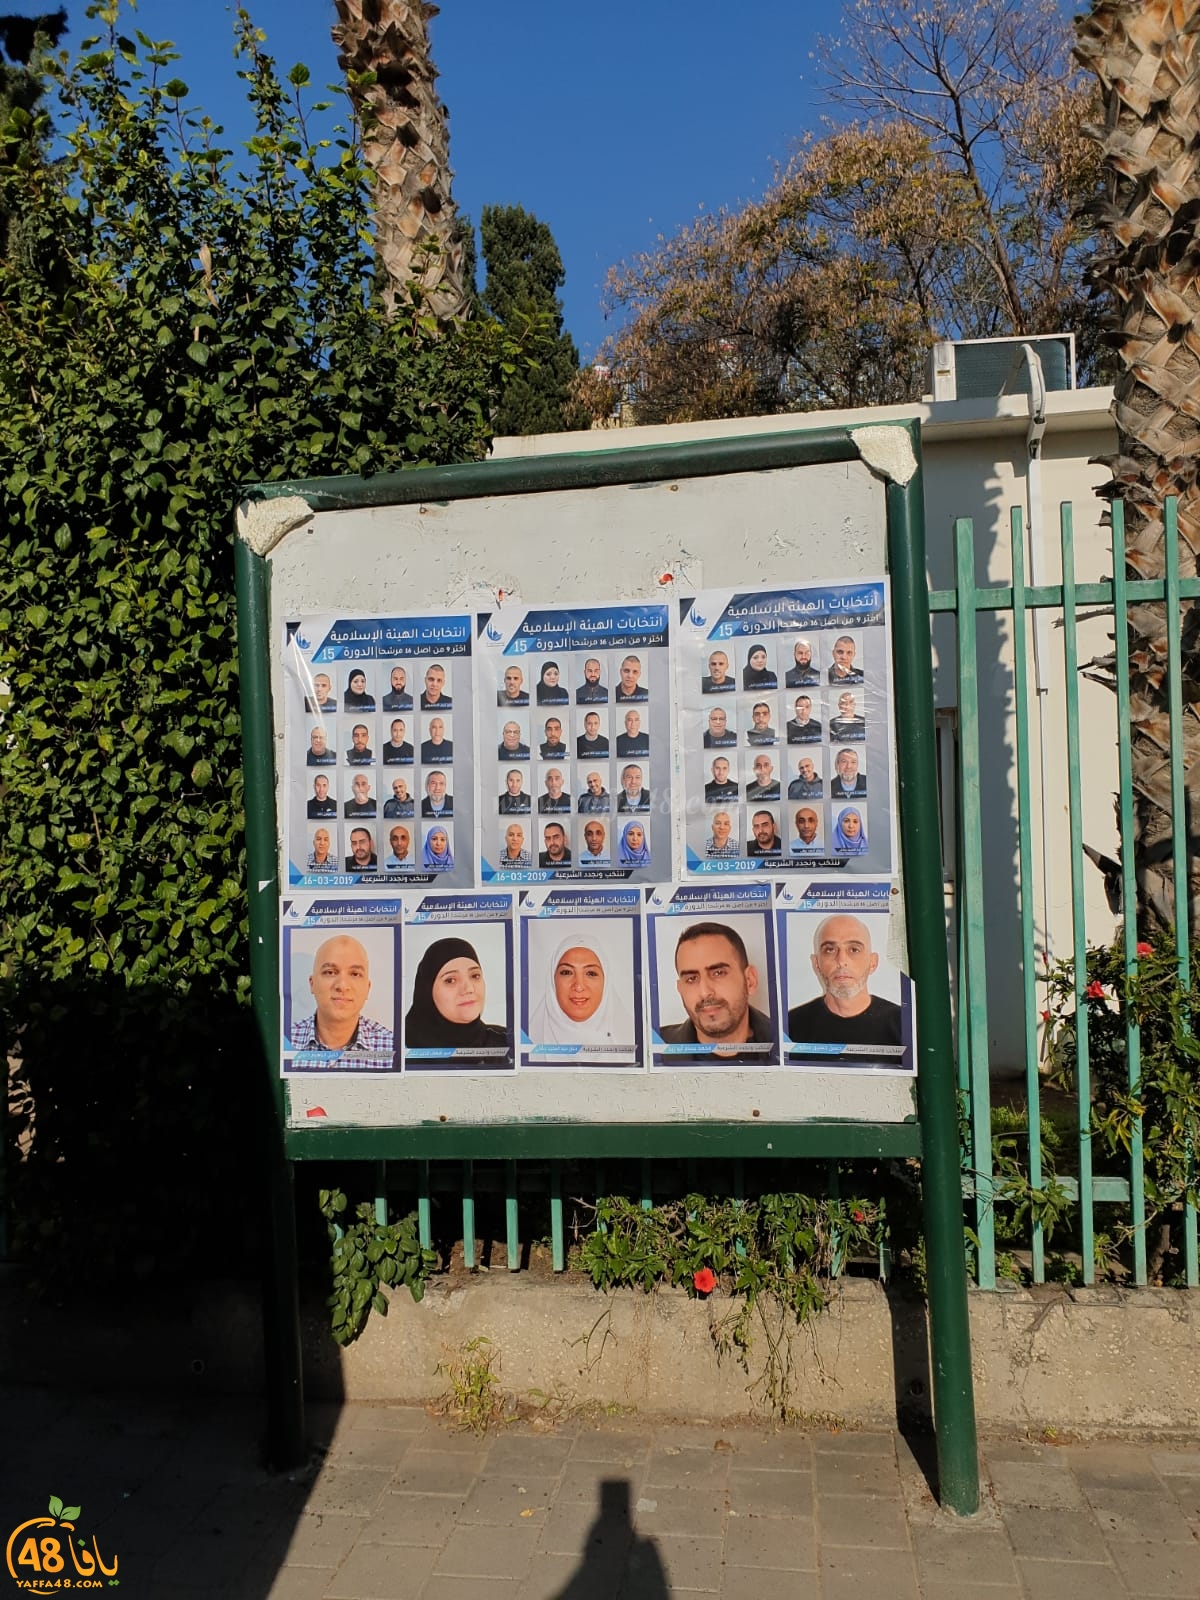 بالصور: انتخابات الهيئة الاسلامية تخيّم على الأجواء في مدينة يافا